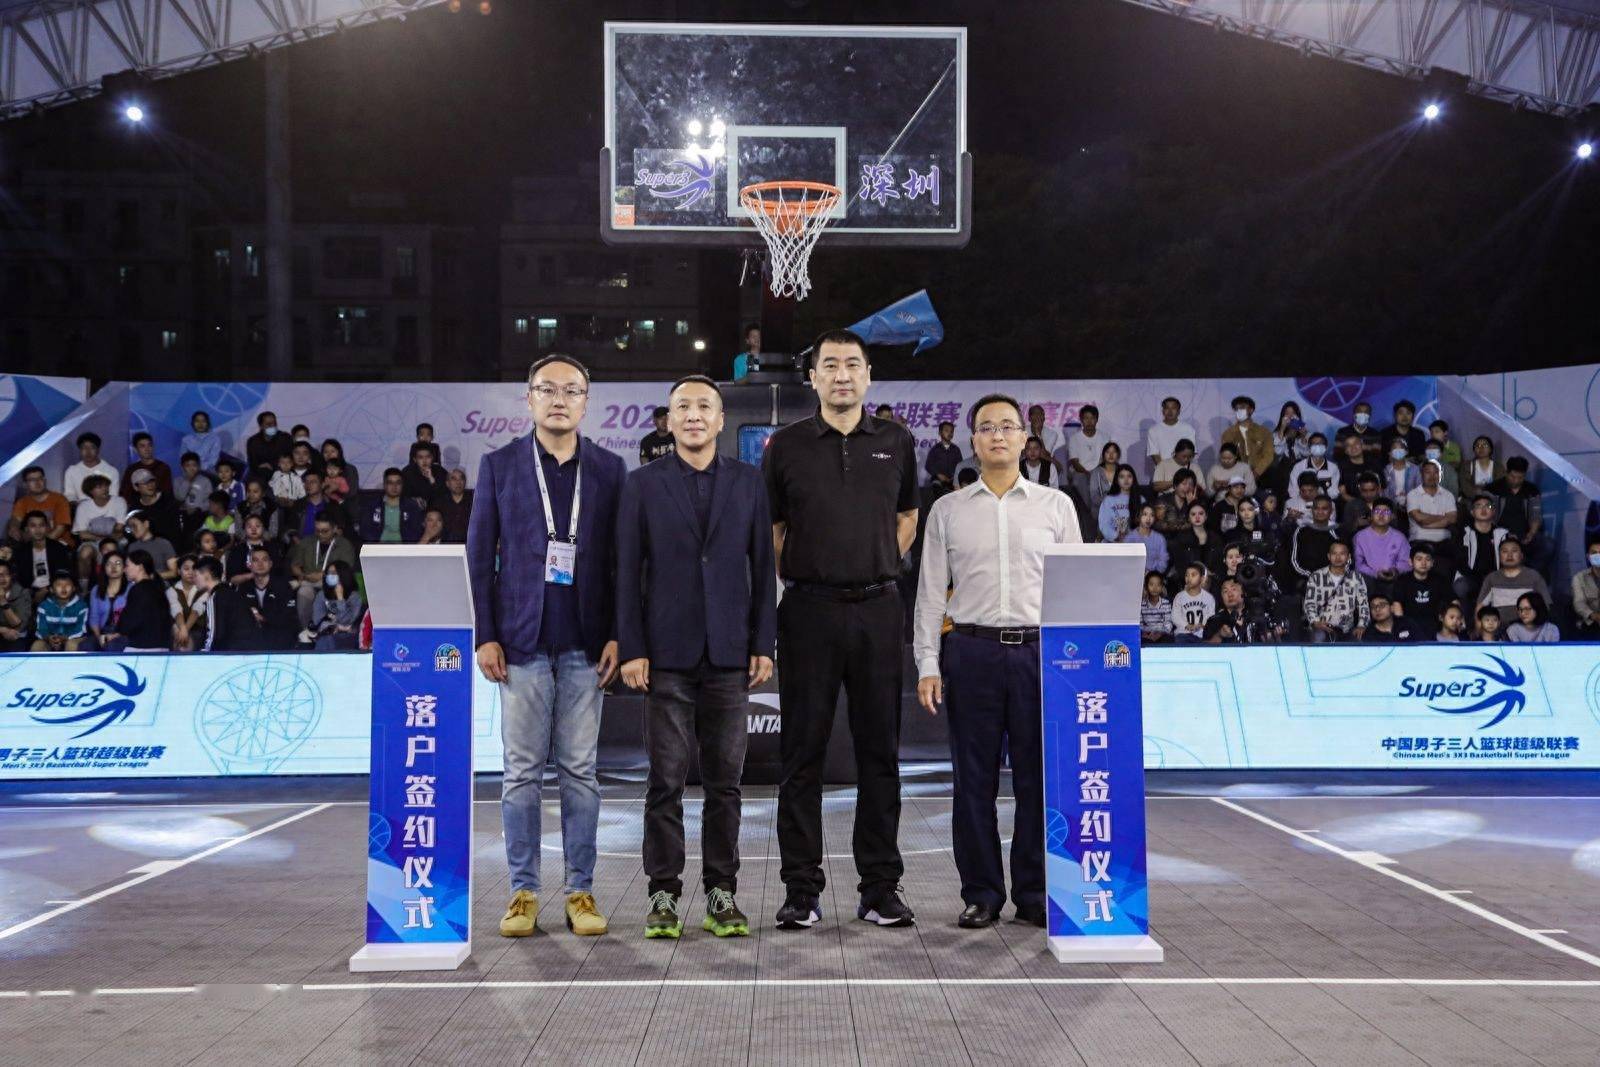 2023赛季中国男子三人篮球联赛（深圳赛区）正式开幕！ 深圳世纪启航篮球俱乐部正式落户龙华